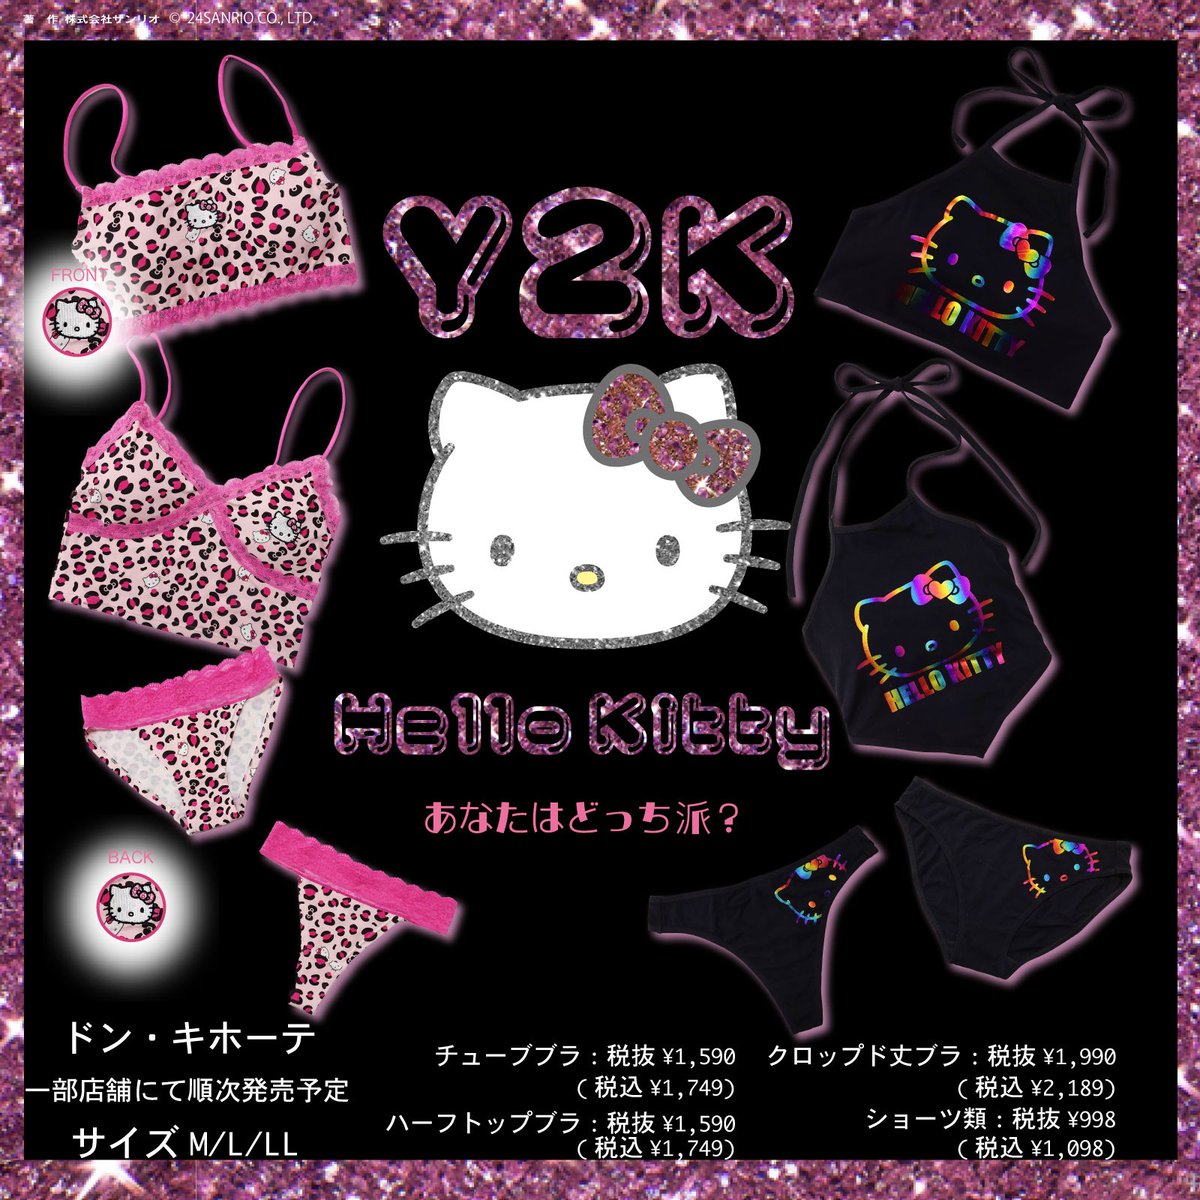 ドン･キホーテで、Y2K #ハローキティ のインナーが登場！チューブブラなど、これからの季節にぴったりなアイテムだよ♪ピンクのレースがかわいいヒョウ柄と、オーロラカラーが映えるブラックの2デザイン。キティと一緒にいろんなコーデを楽しんでね♡5月中旬～順次発売★ sanrio.lnky.jp/kNyEi6H